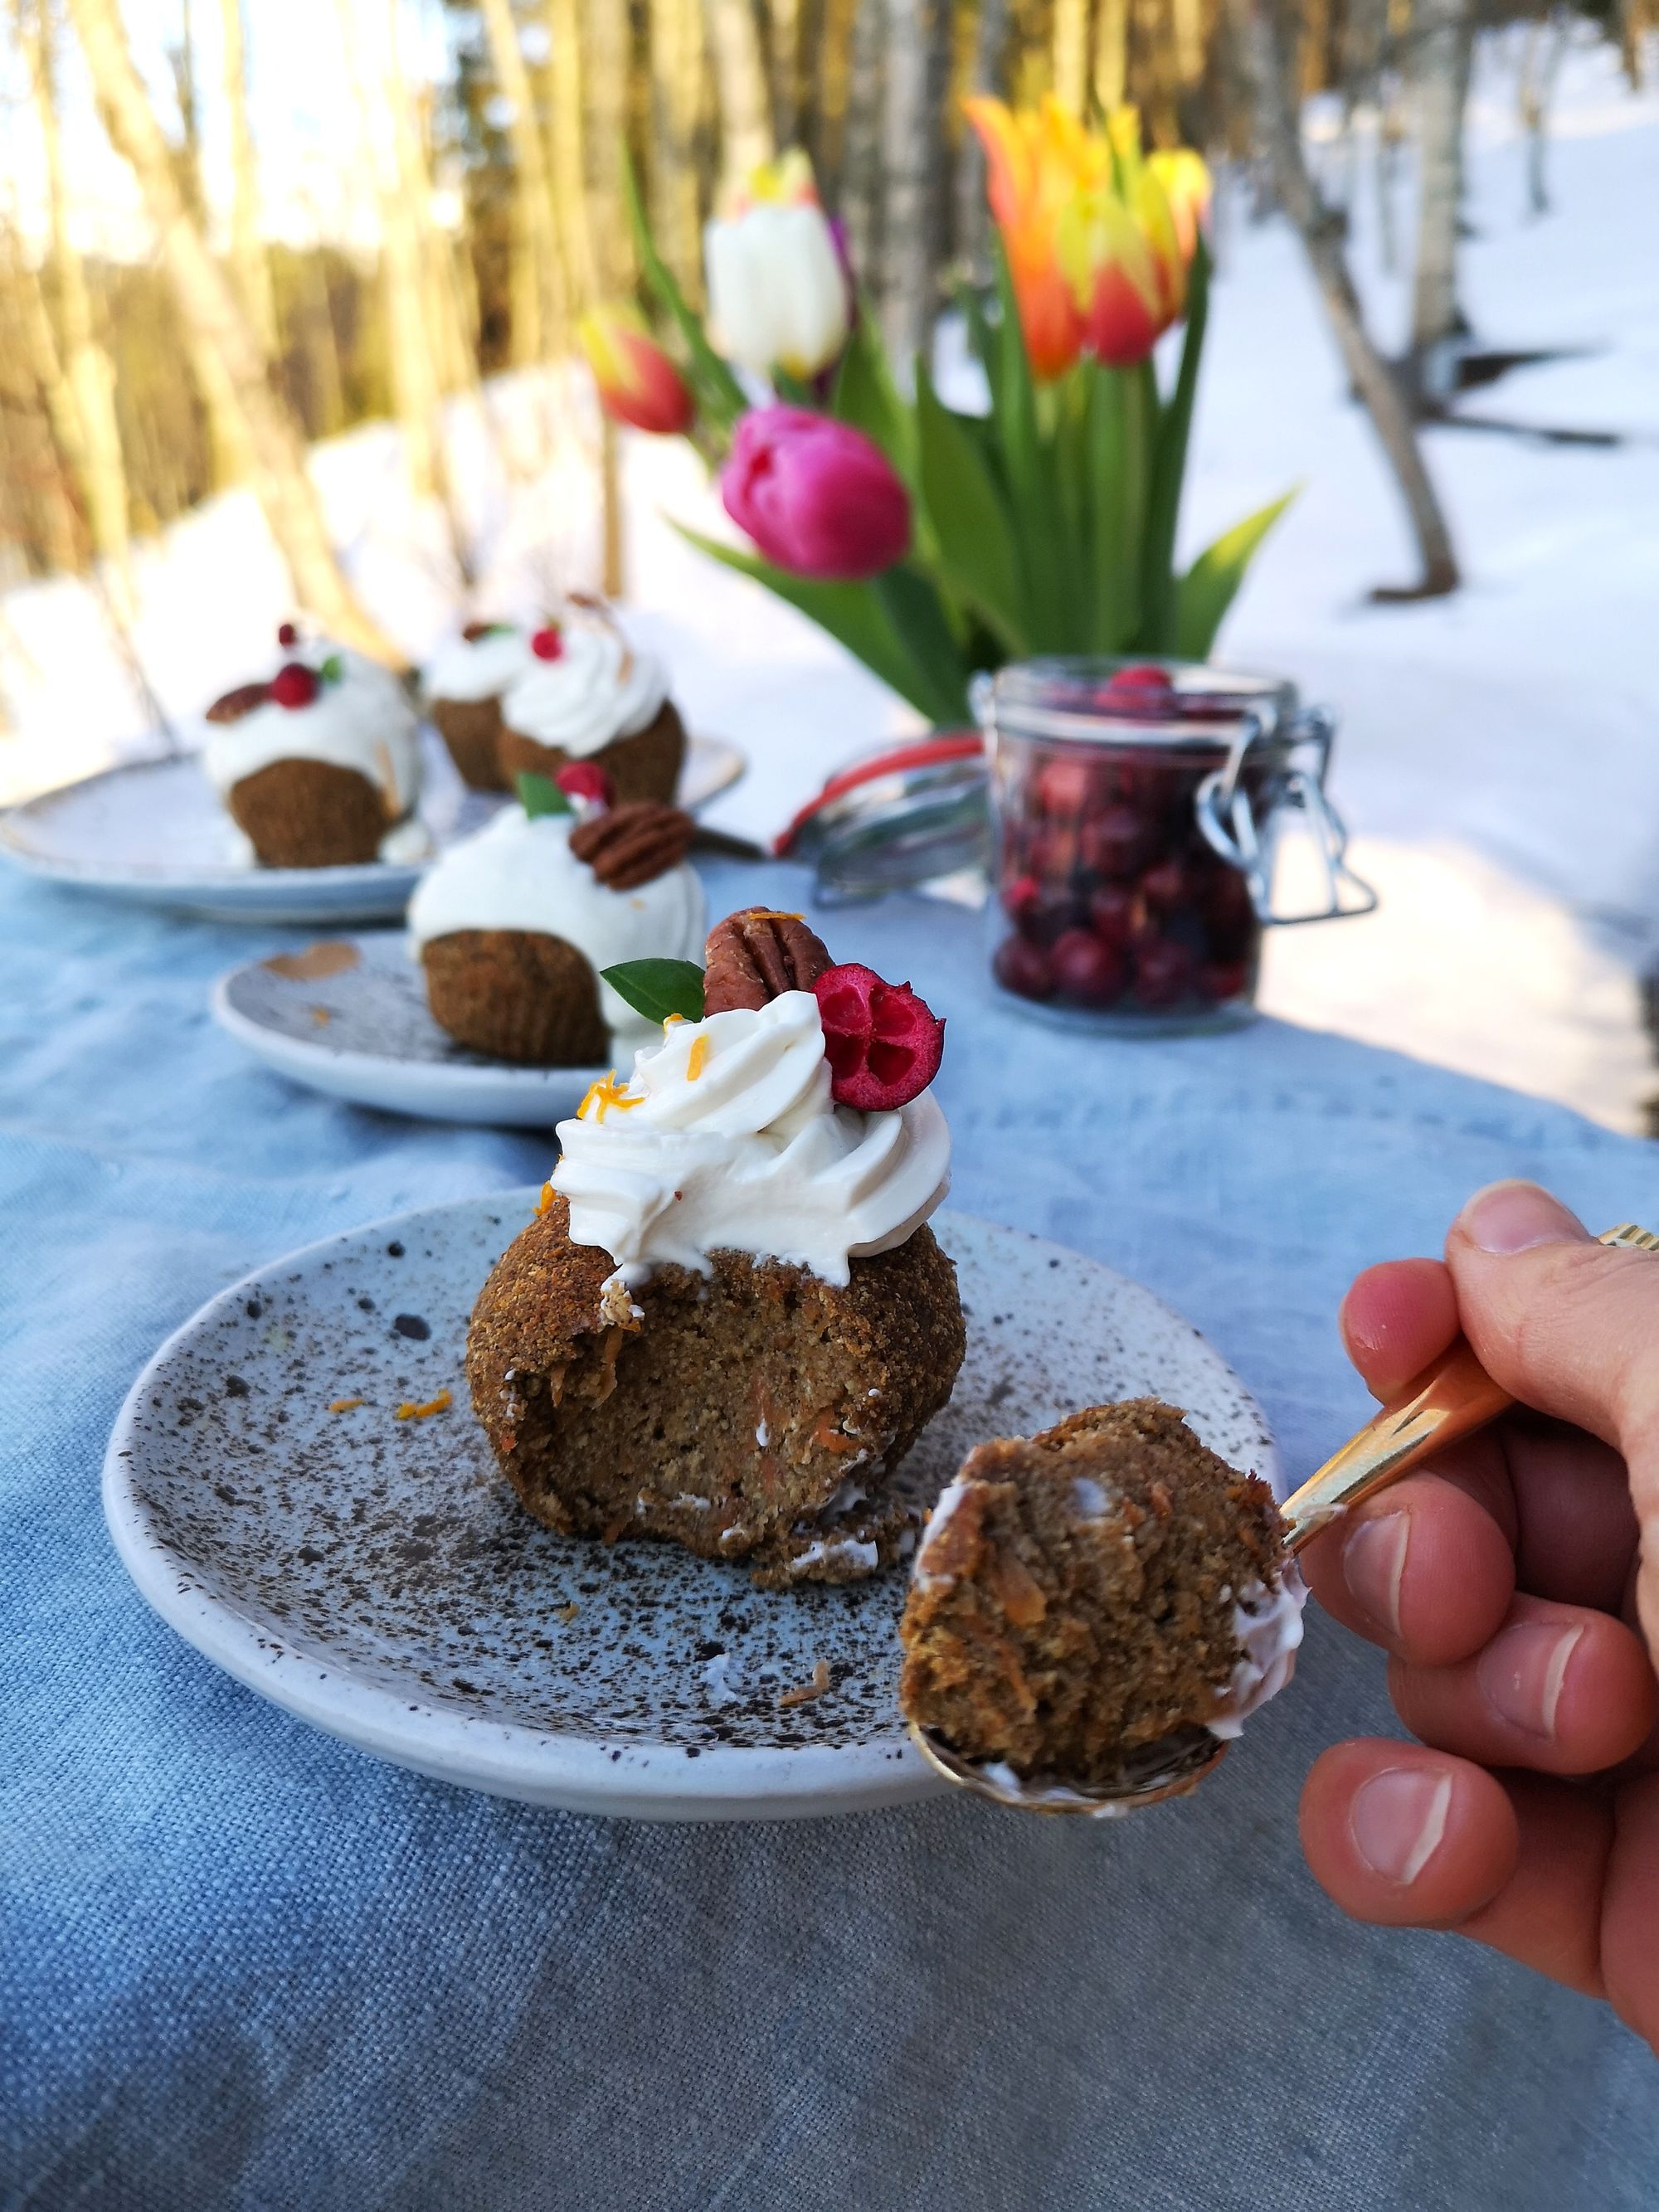 Morotskakemuffins - Carrot cake muffins